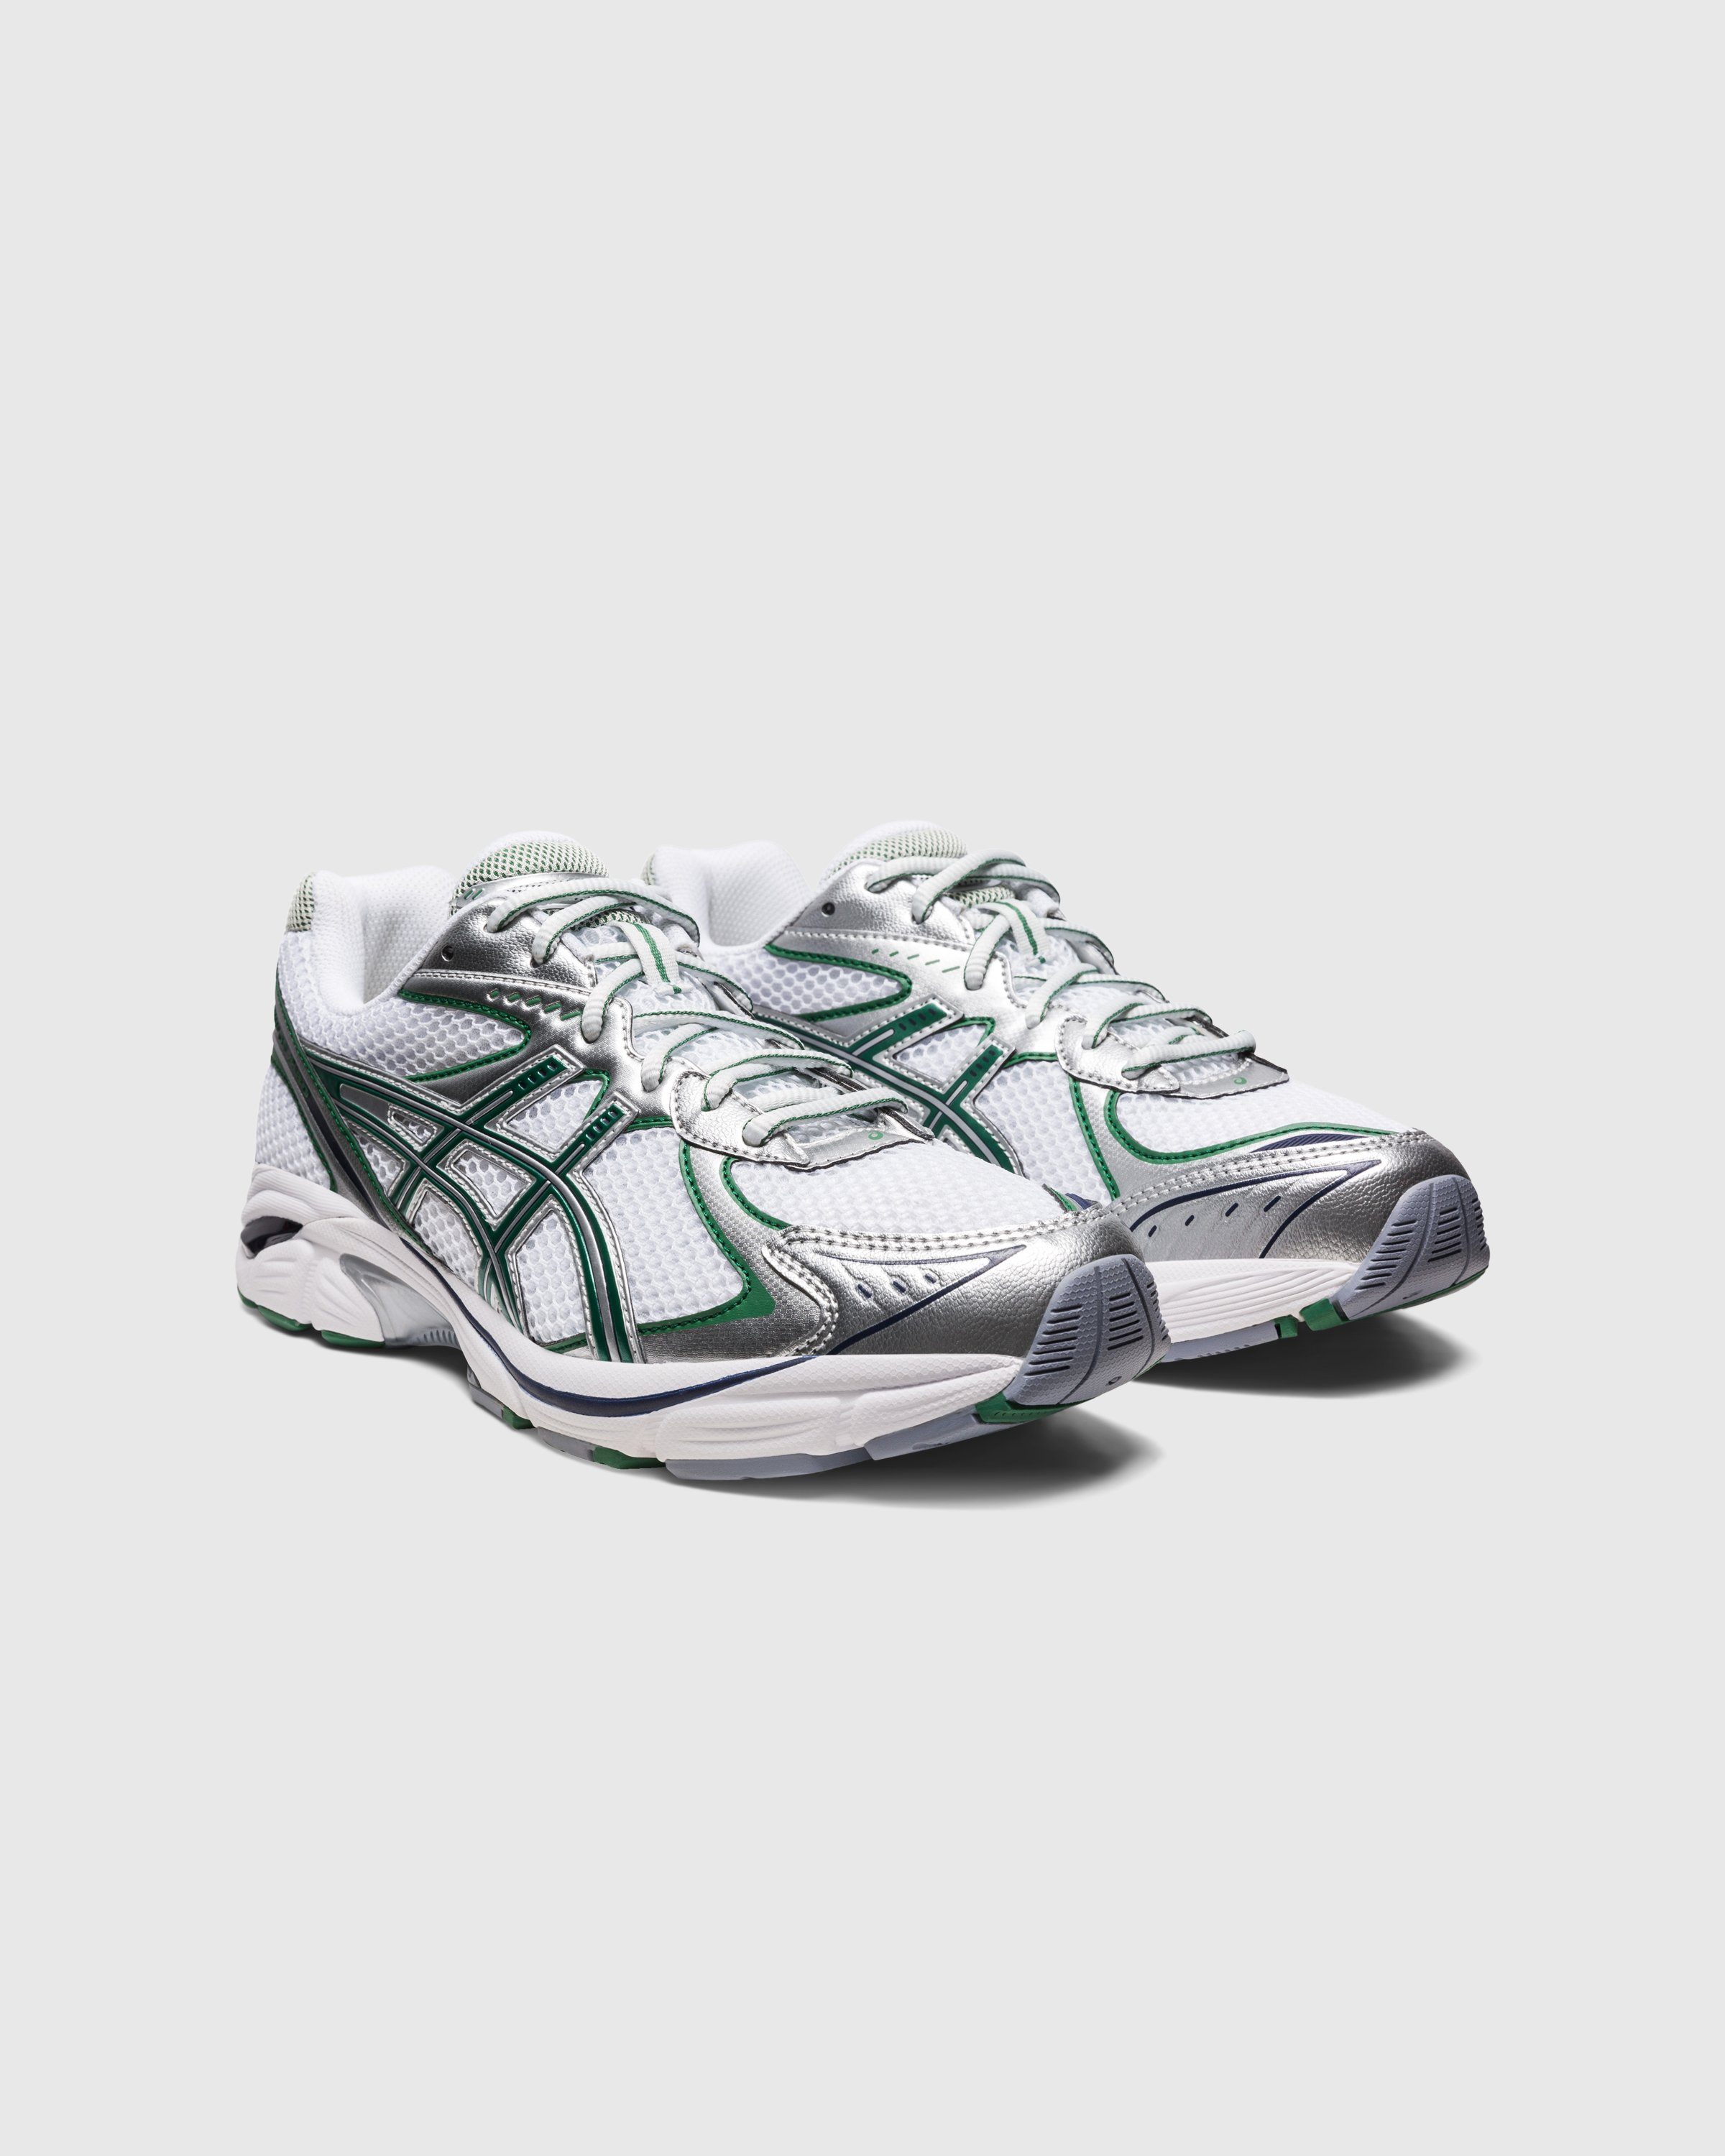 asics - GT-2160 White/Shamrock Green - Footwear - Multi - Image 3